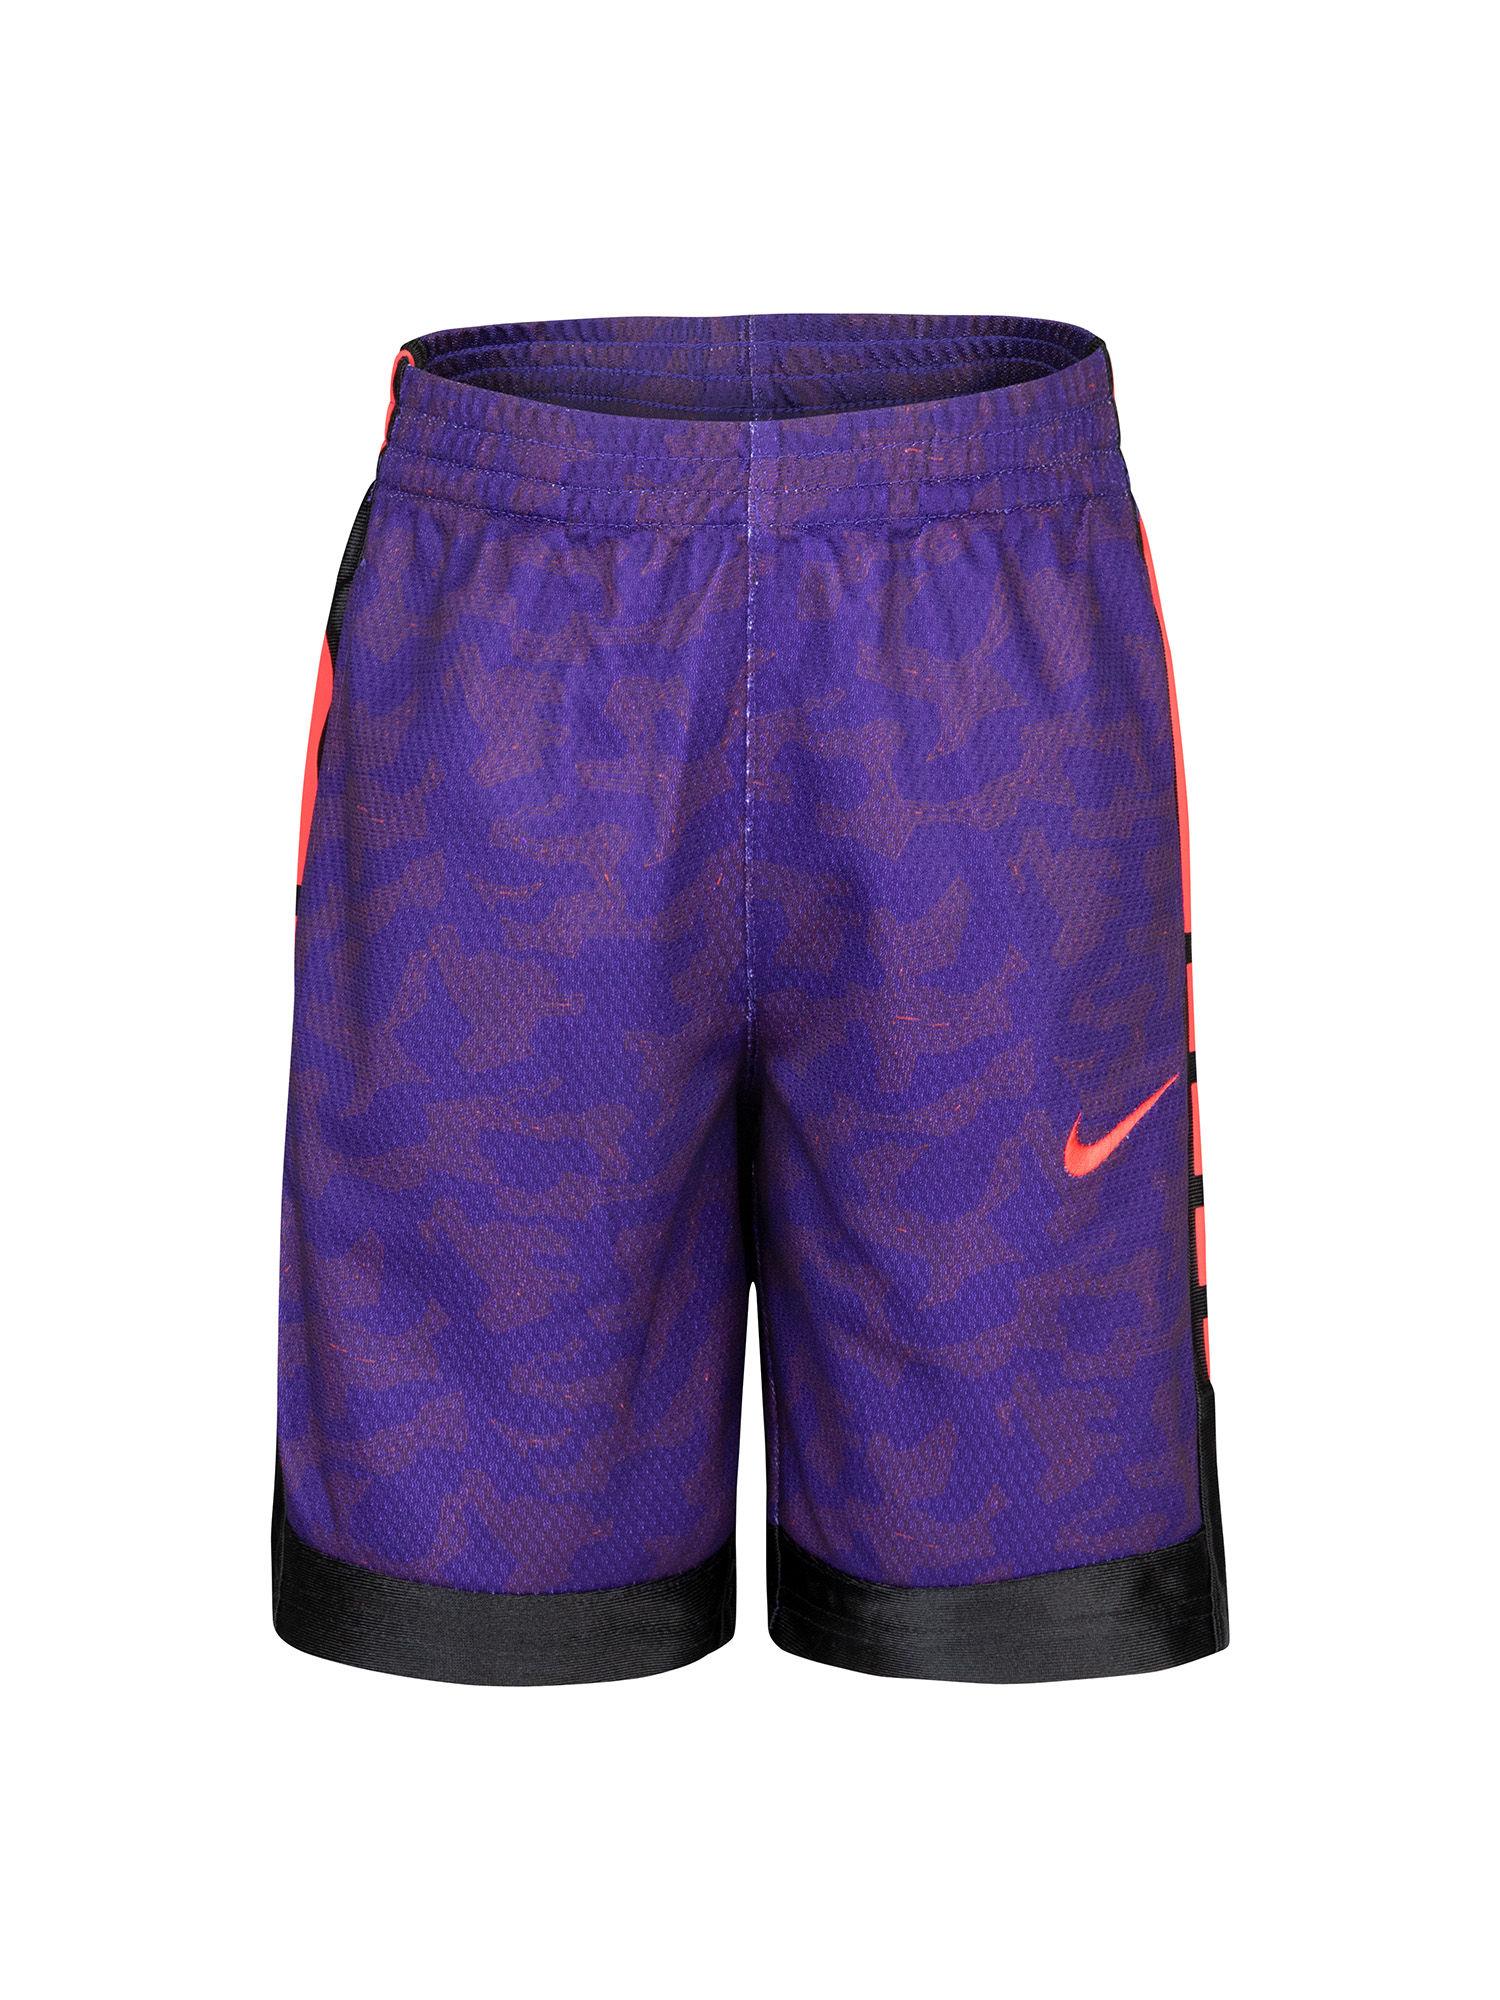 Boys Purple Printed Shorts